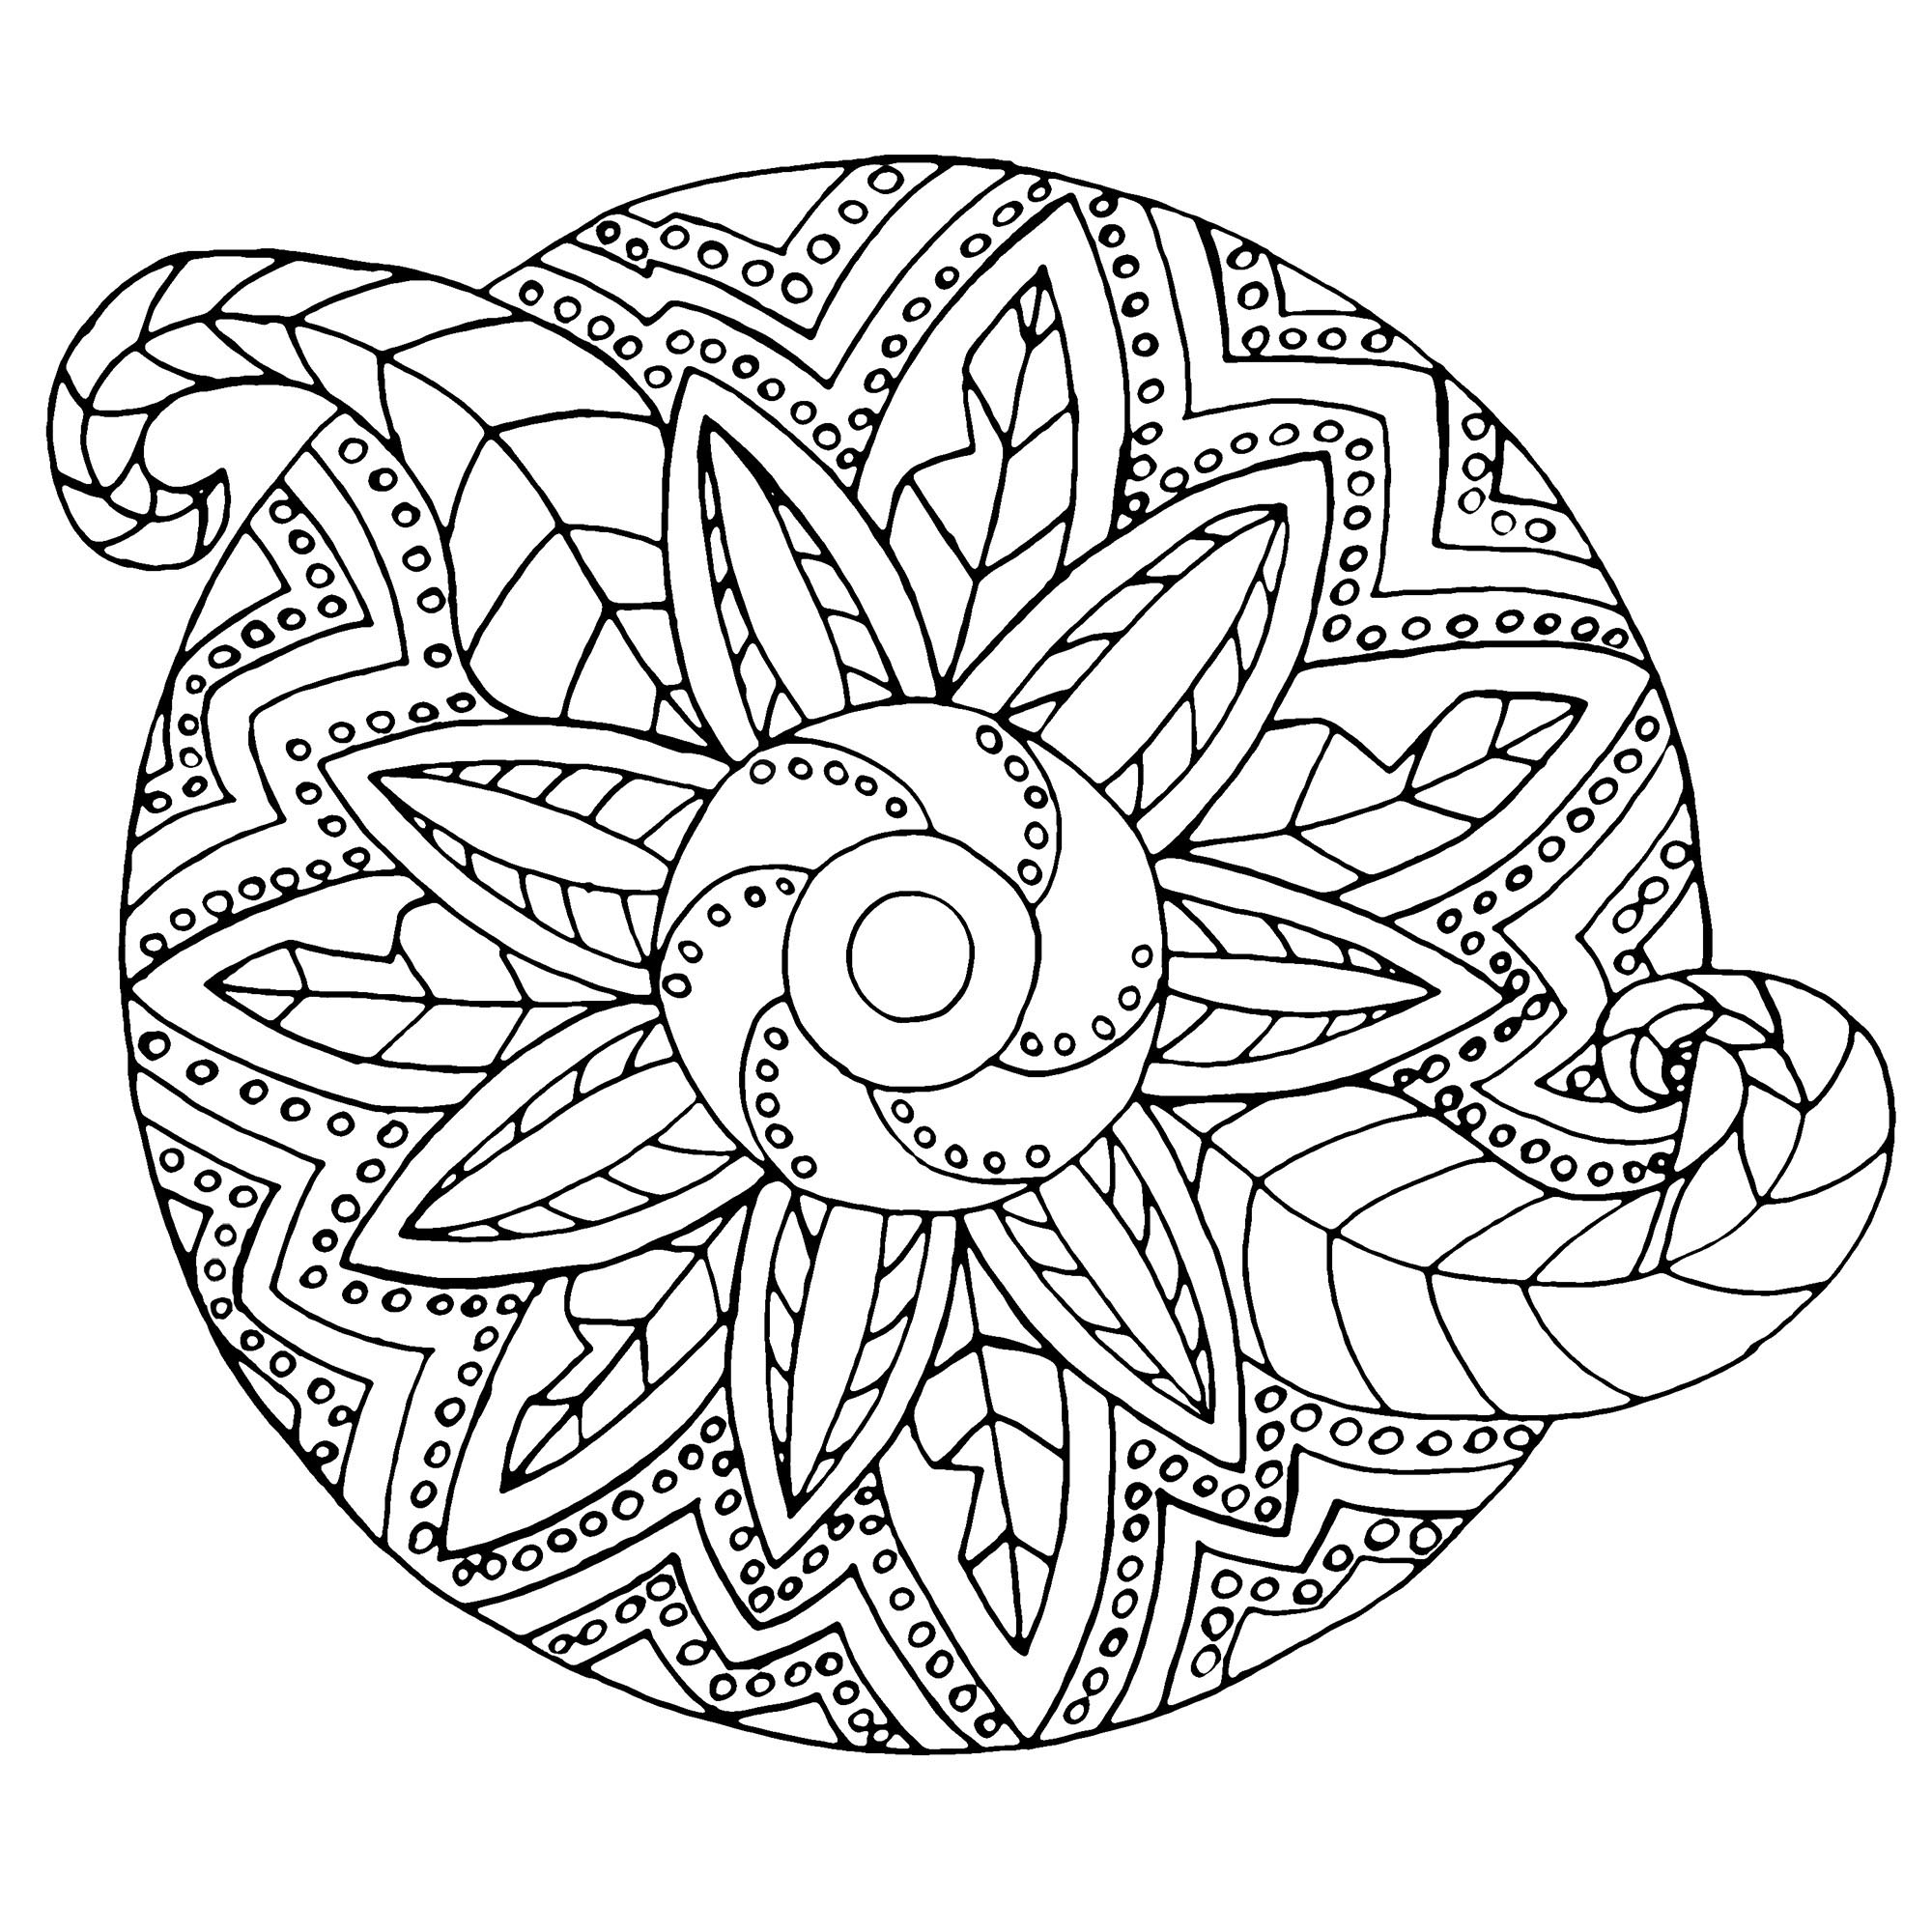 Un Mandala avec à la fois des formes métalliques et végétales. Il n'est pas trop compliqué, parfait pour les enfants.